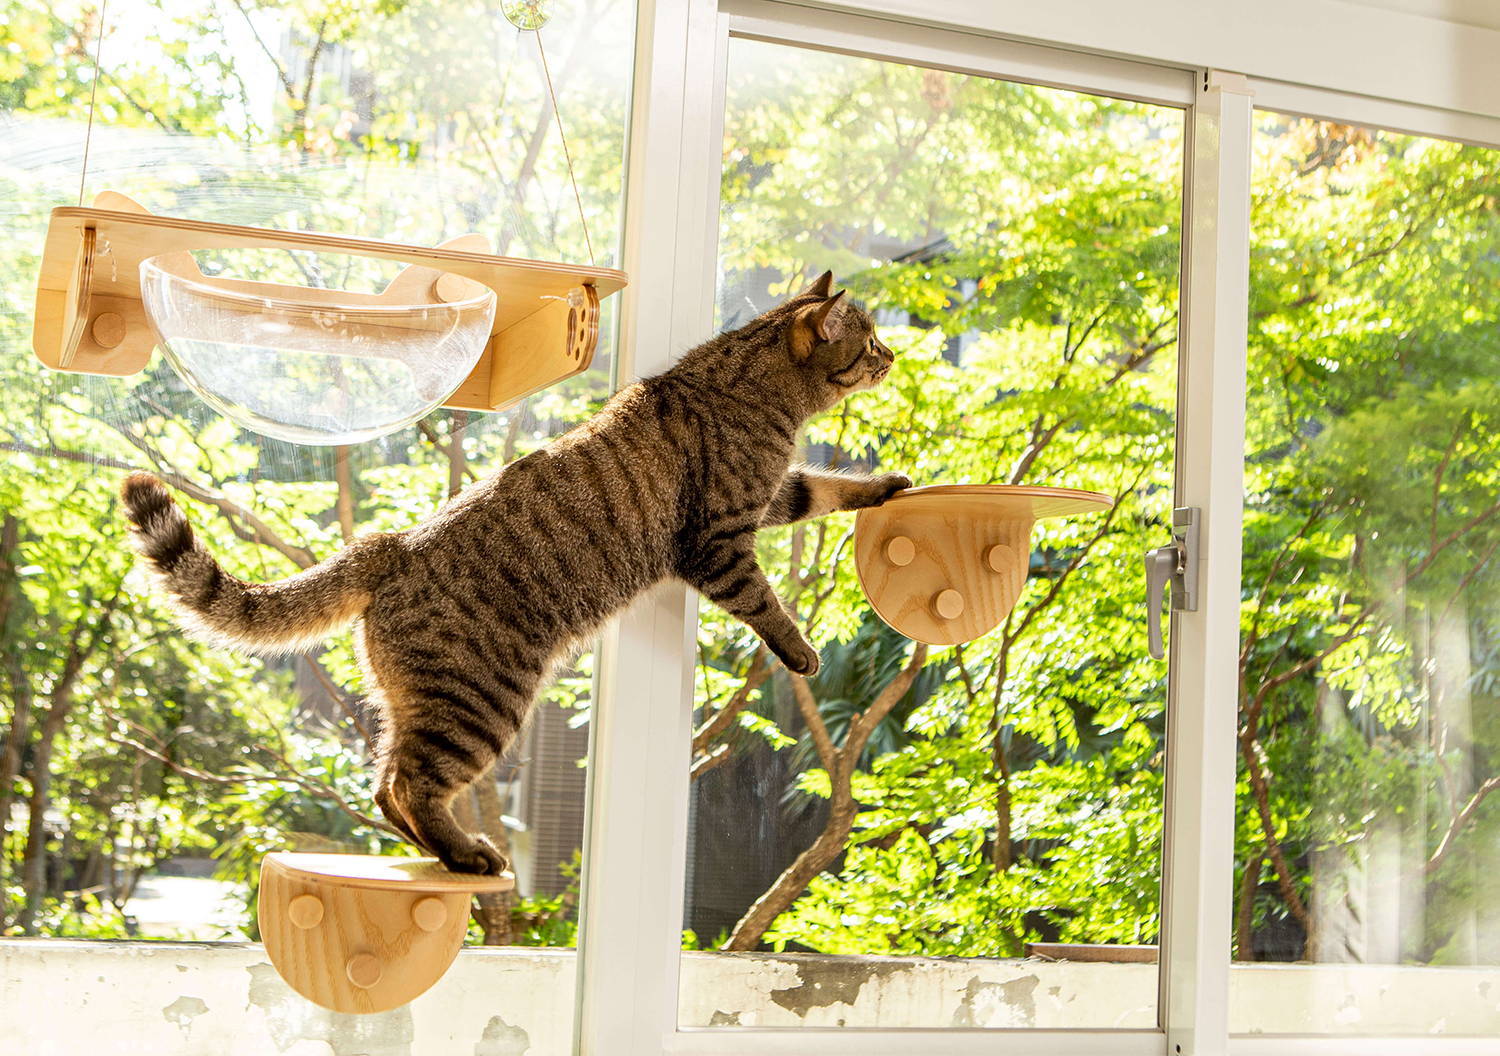 貓咪正從一個貓跳台跨越到另一個跳台